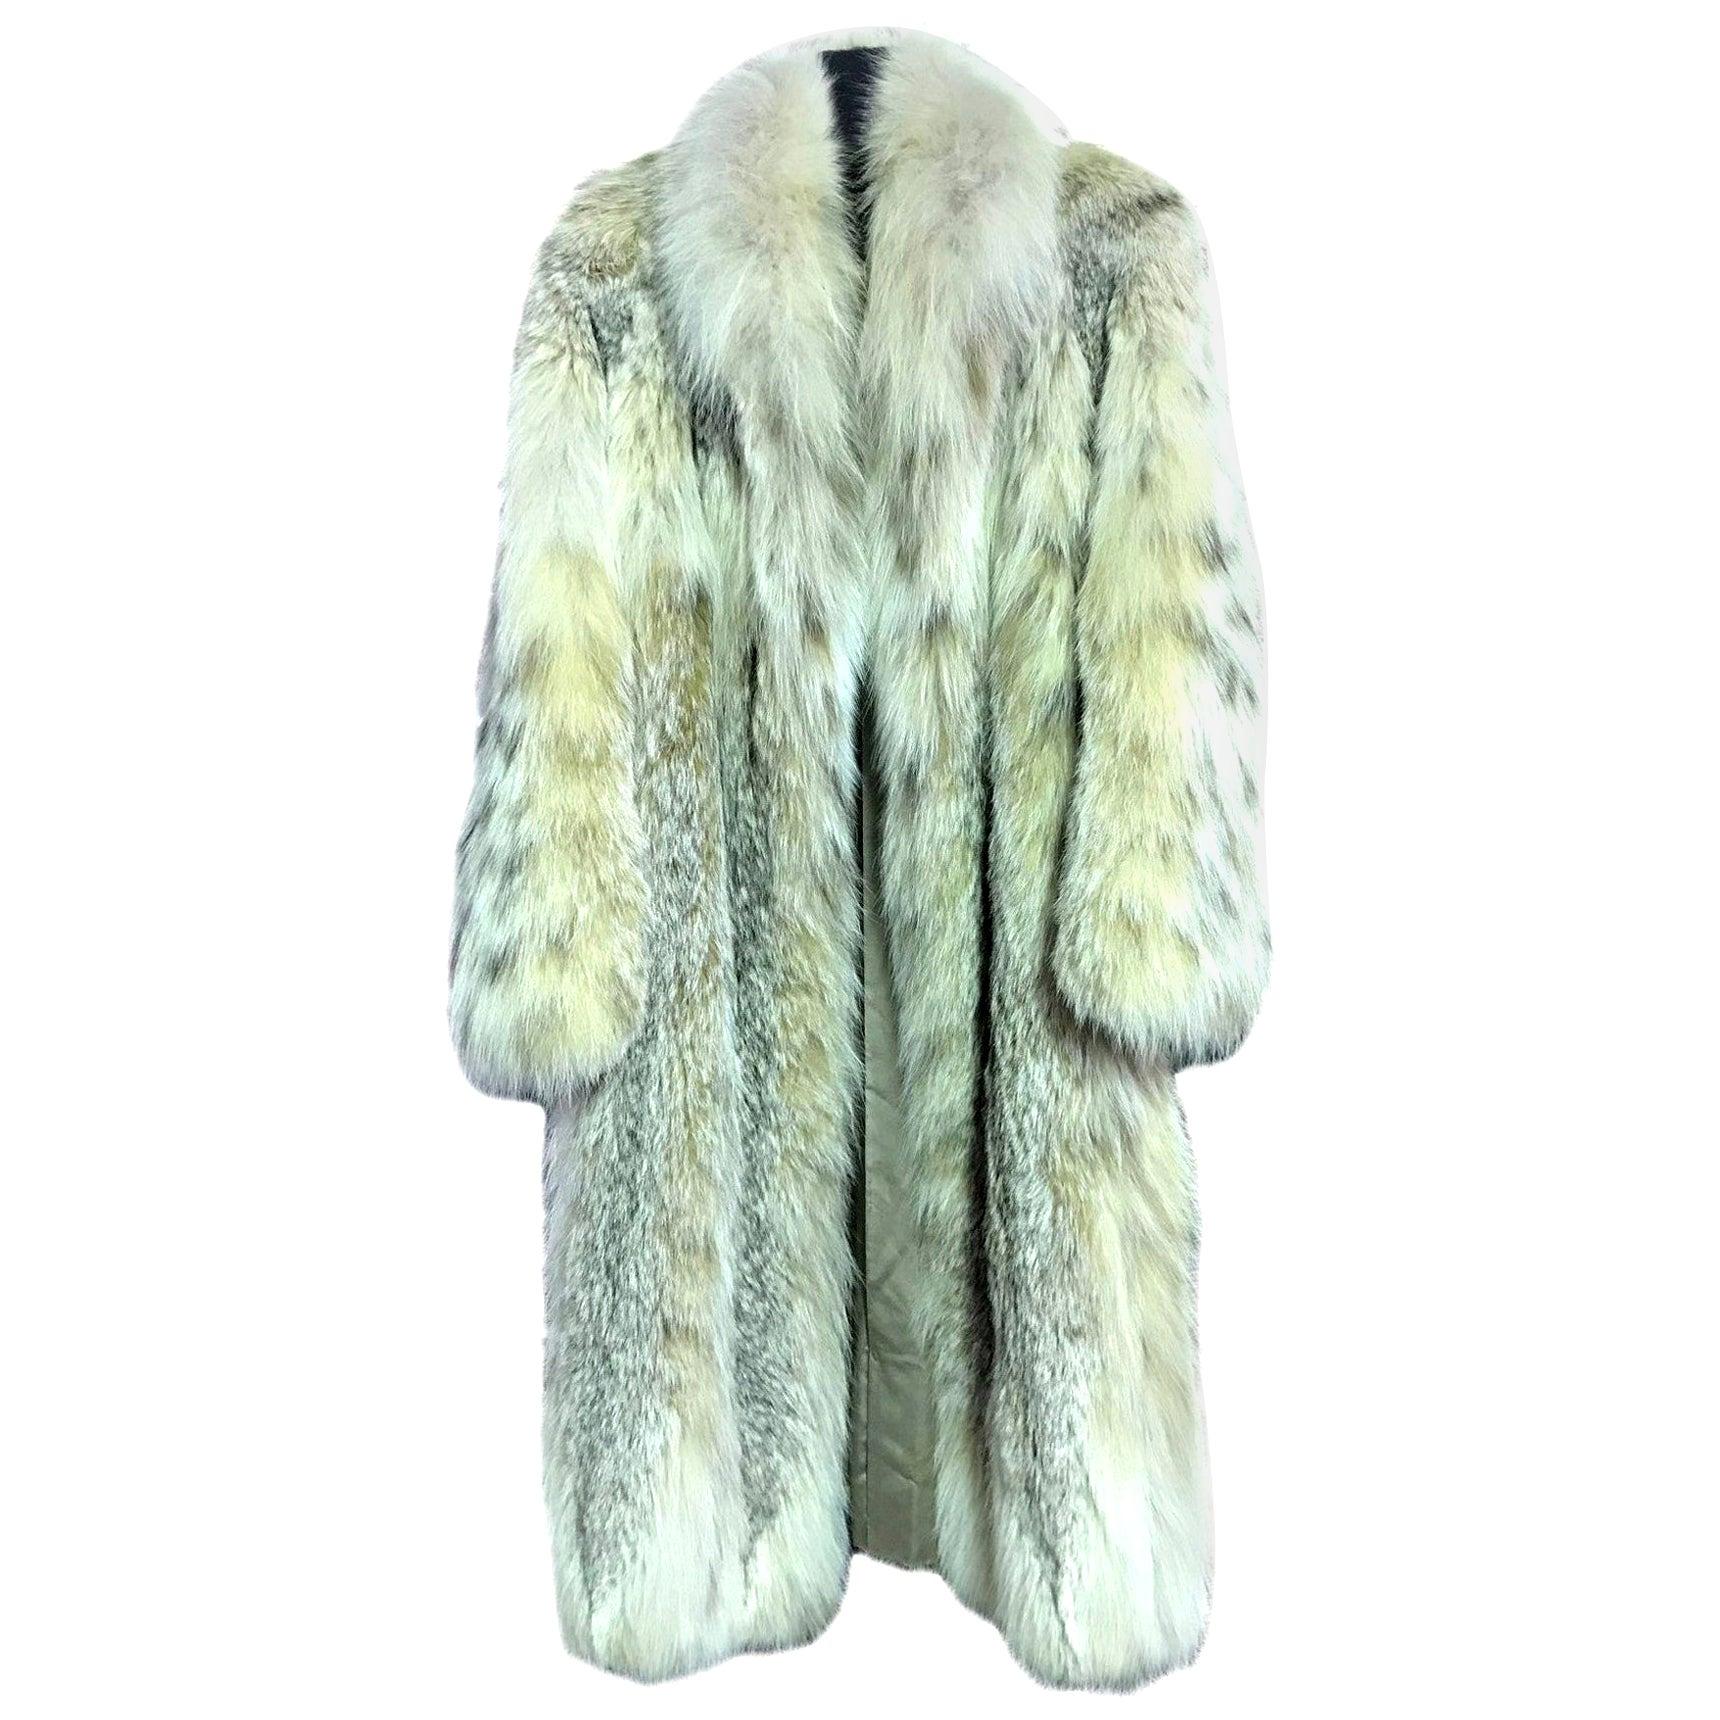 Hanae Mori Japanese Modern Designer Fourrure Full Length Lynx Fur Coat